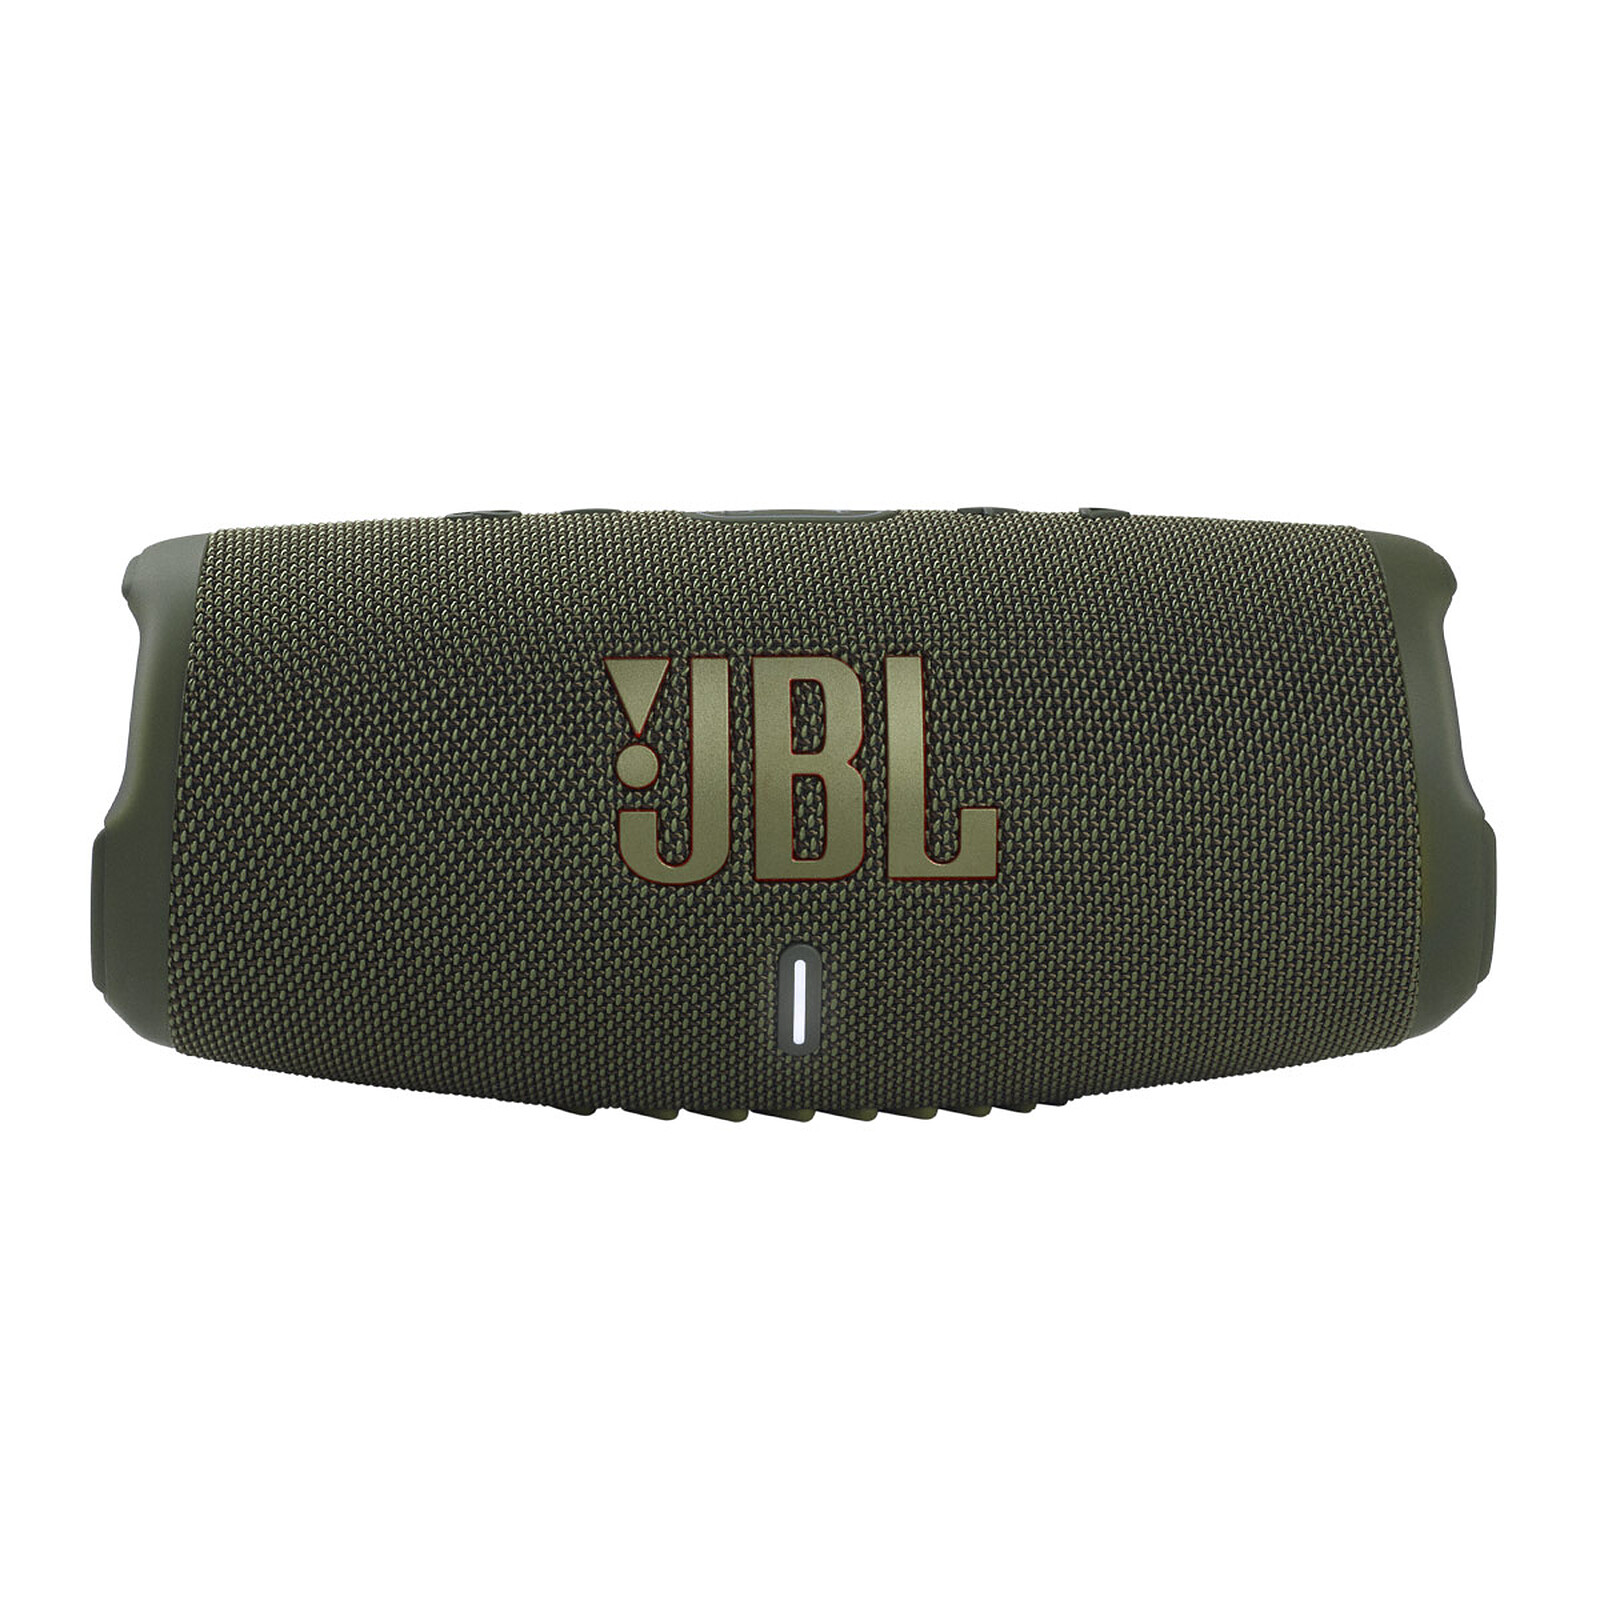 JBL CHARGE 5 - Altavoz Bluetooth portátil con IP67 impermeable y carga USB,  color gris